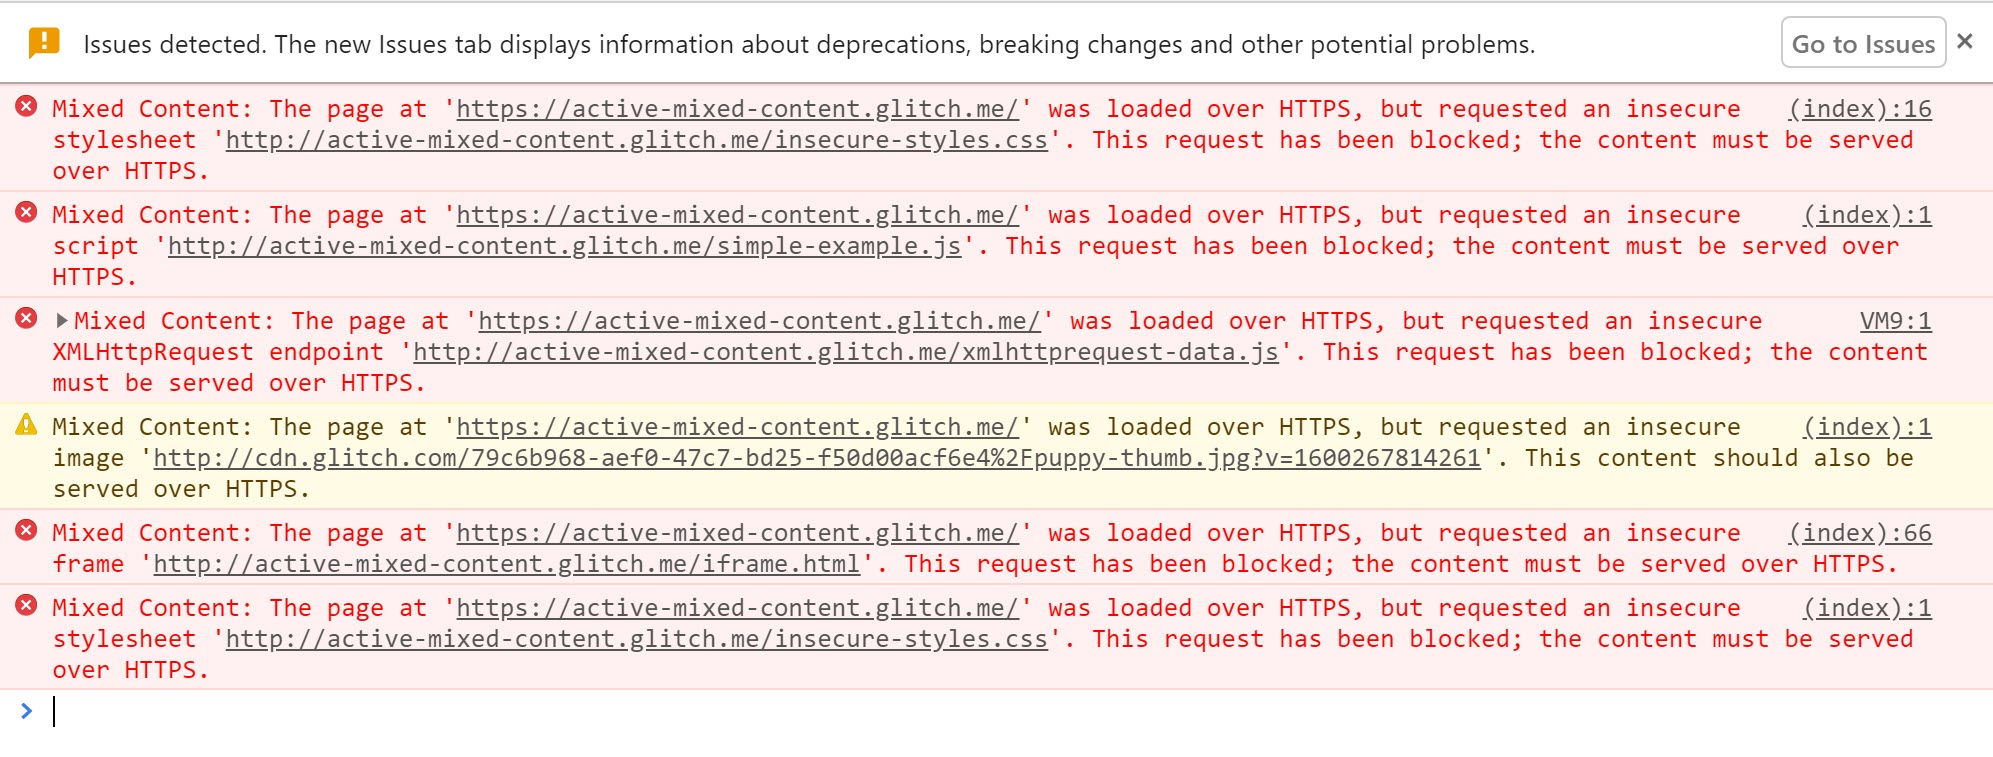 활성 혼합 콘텐츠가 차단되었을 때 경고를 표시하는 Chrome DevTools